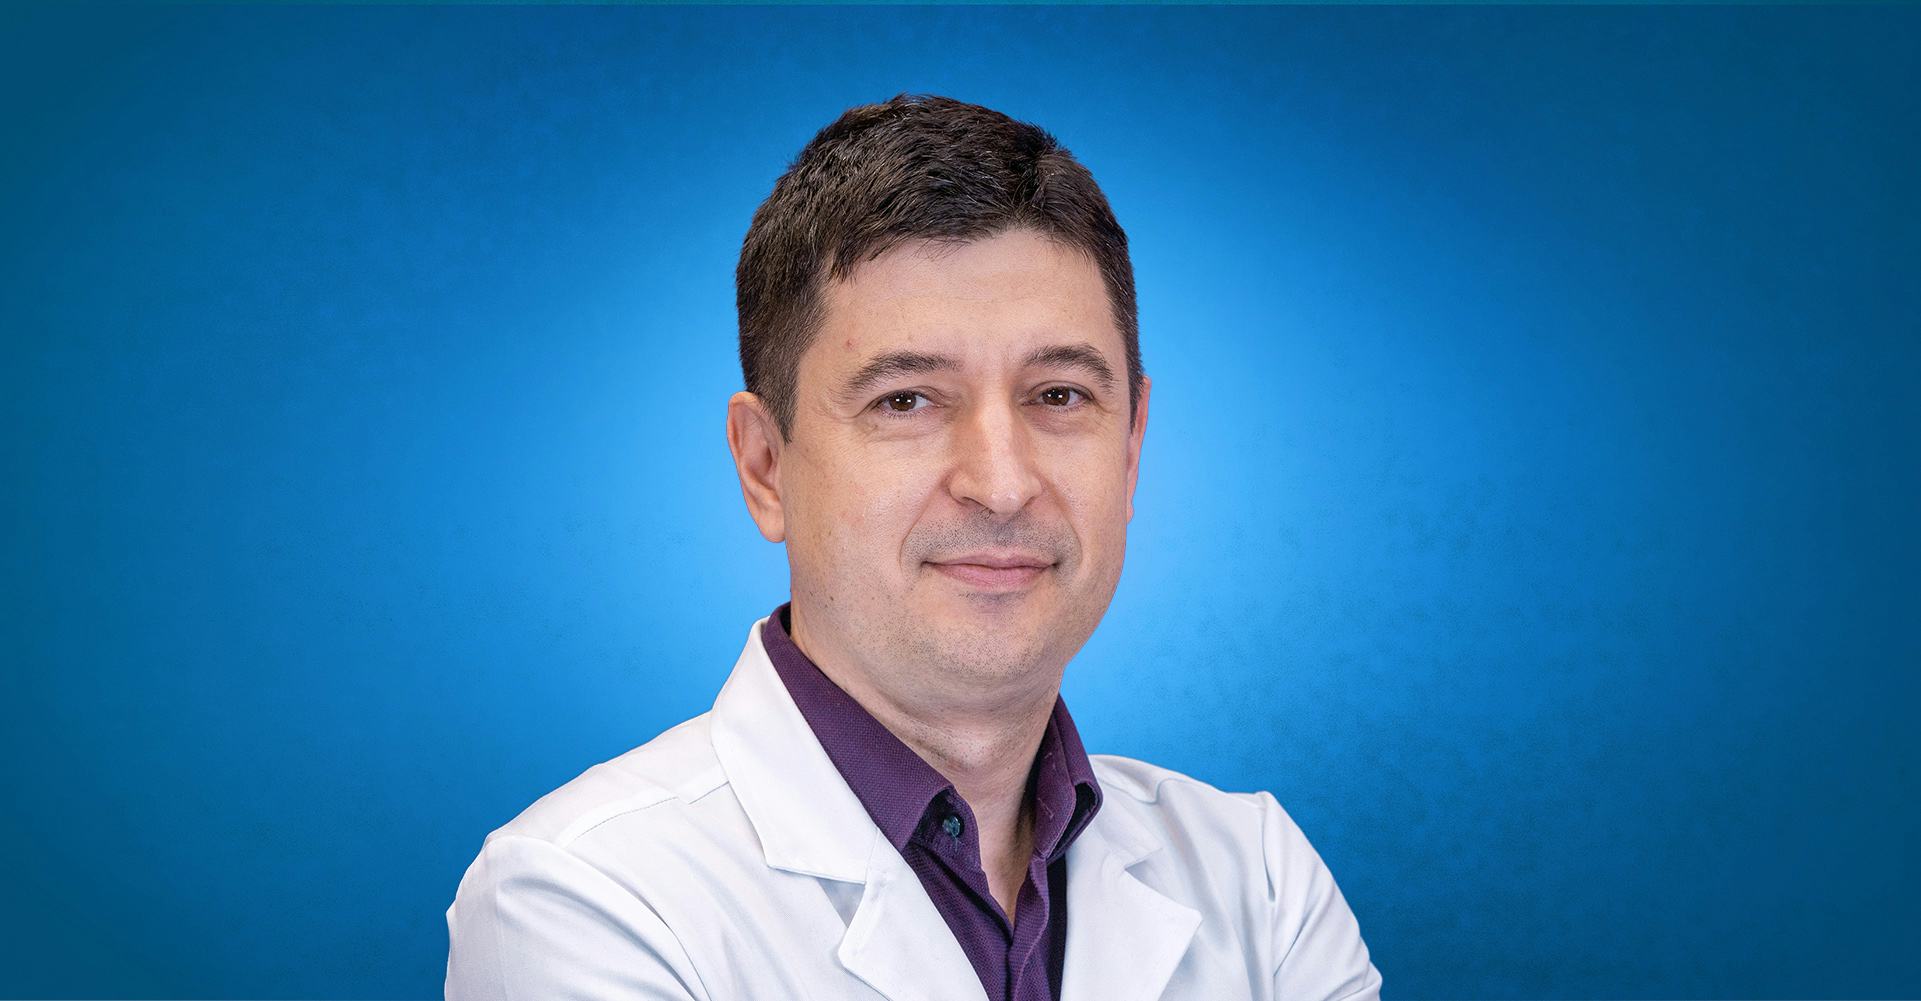 Dr. Mihai Surcel